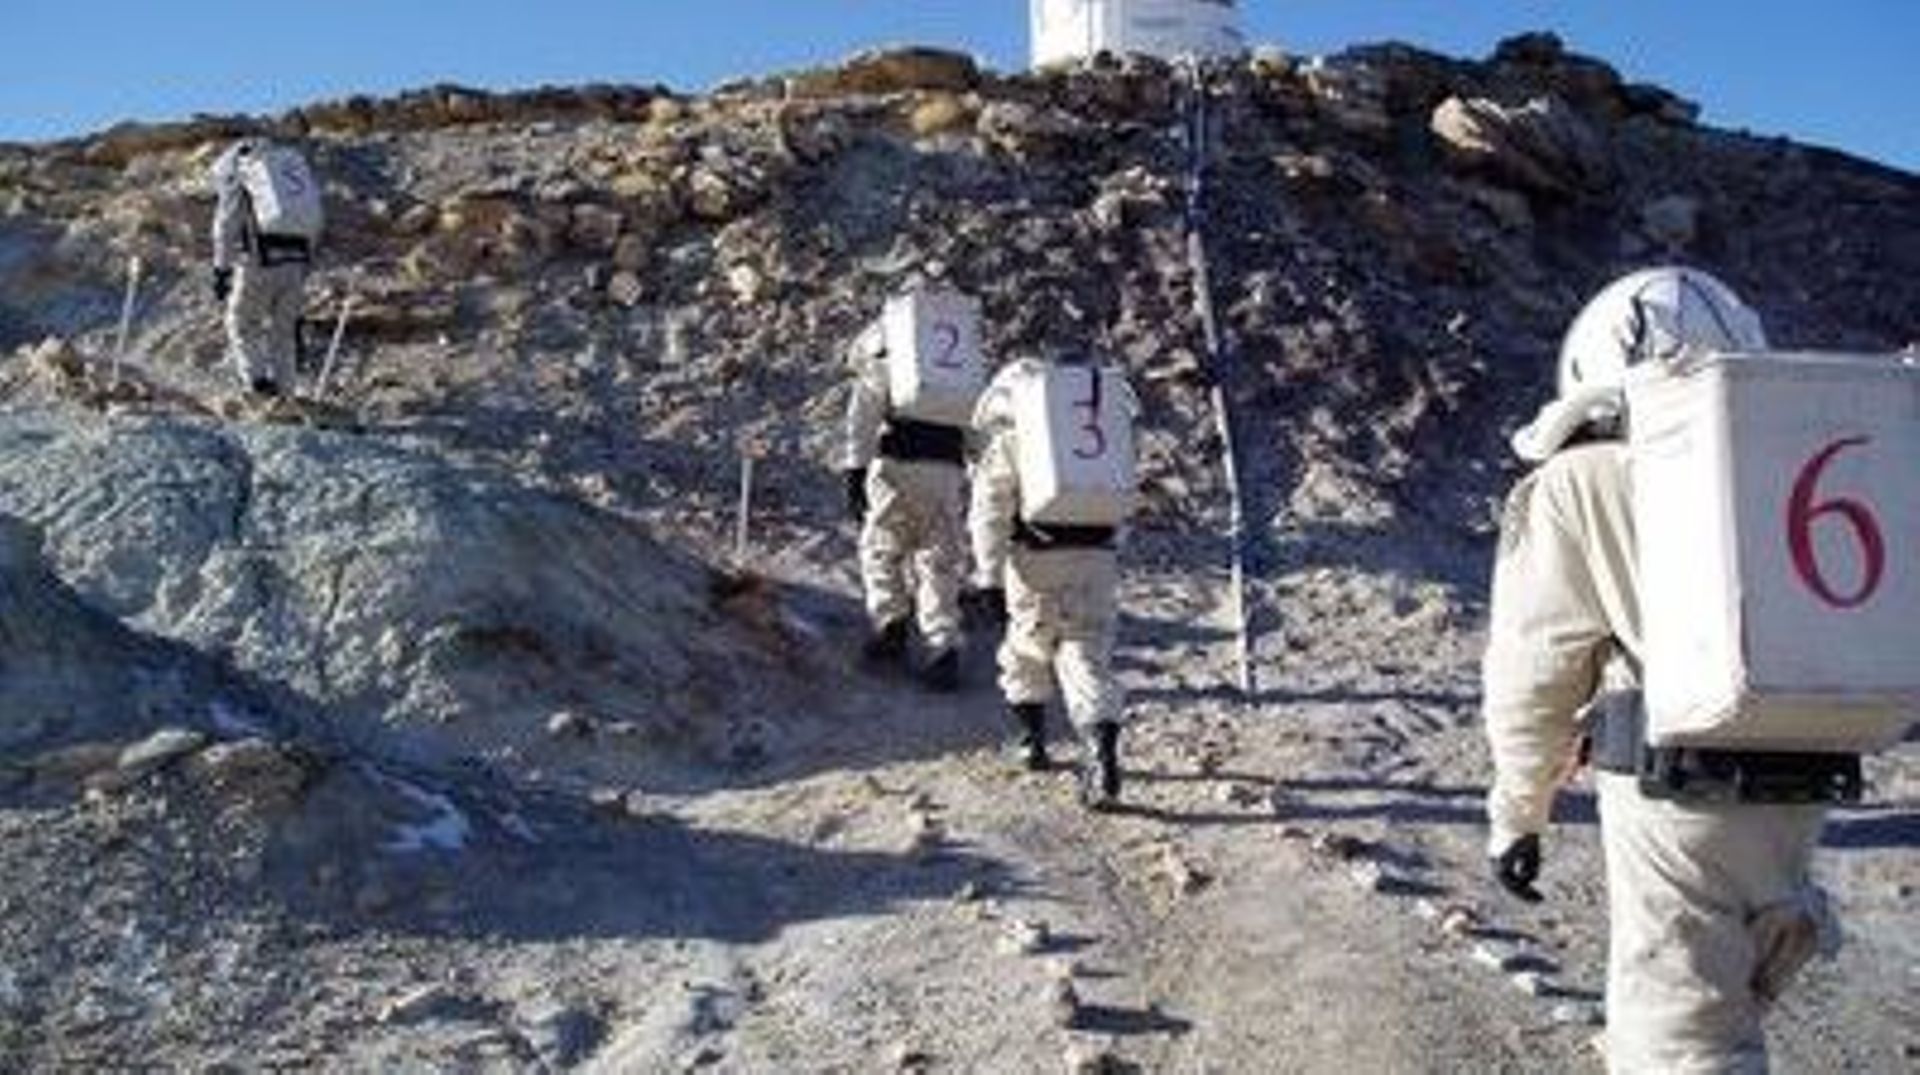 Une équipe constituée de six étudiants de l'Université catholique de Louvain (UCL) va participer à un projet scientifique baptisé "Mission to Mars UCL".